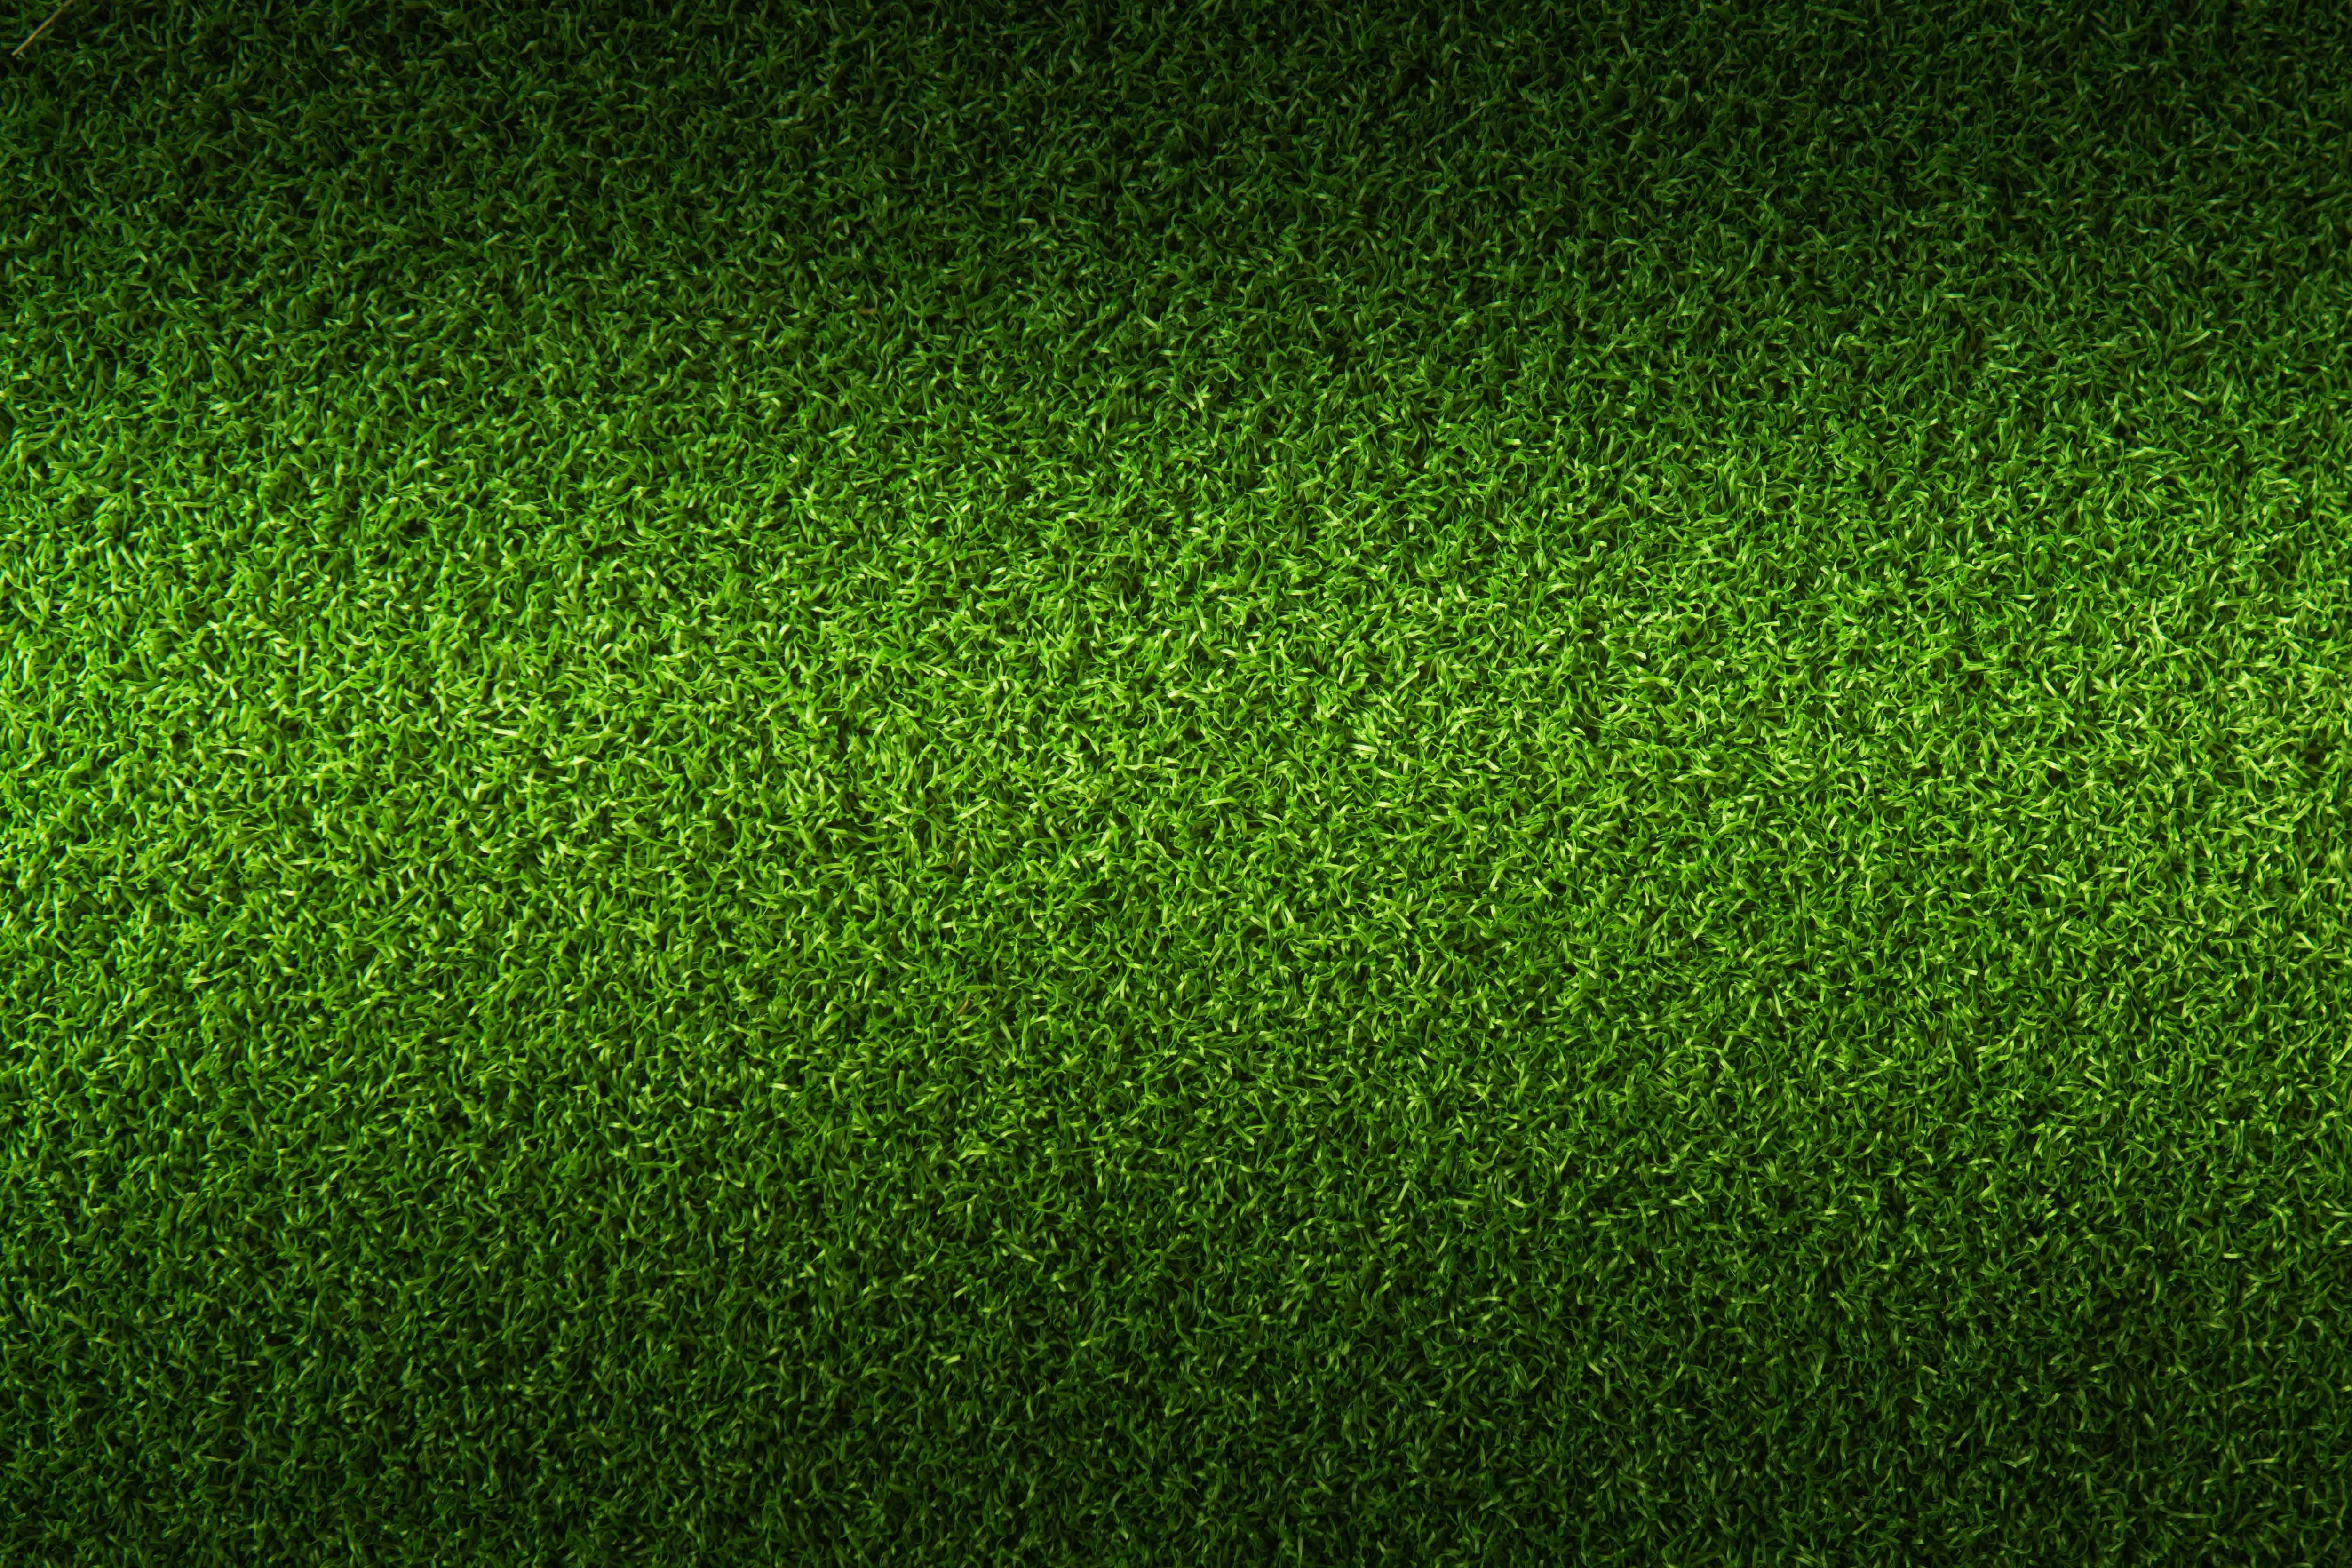 自然绿草超清壁纸,自然风光图片背景,没几个看过的?